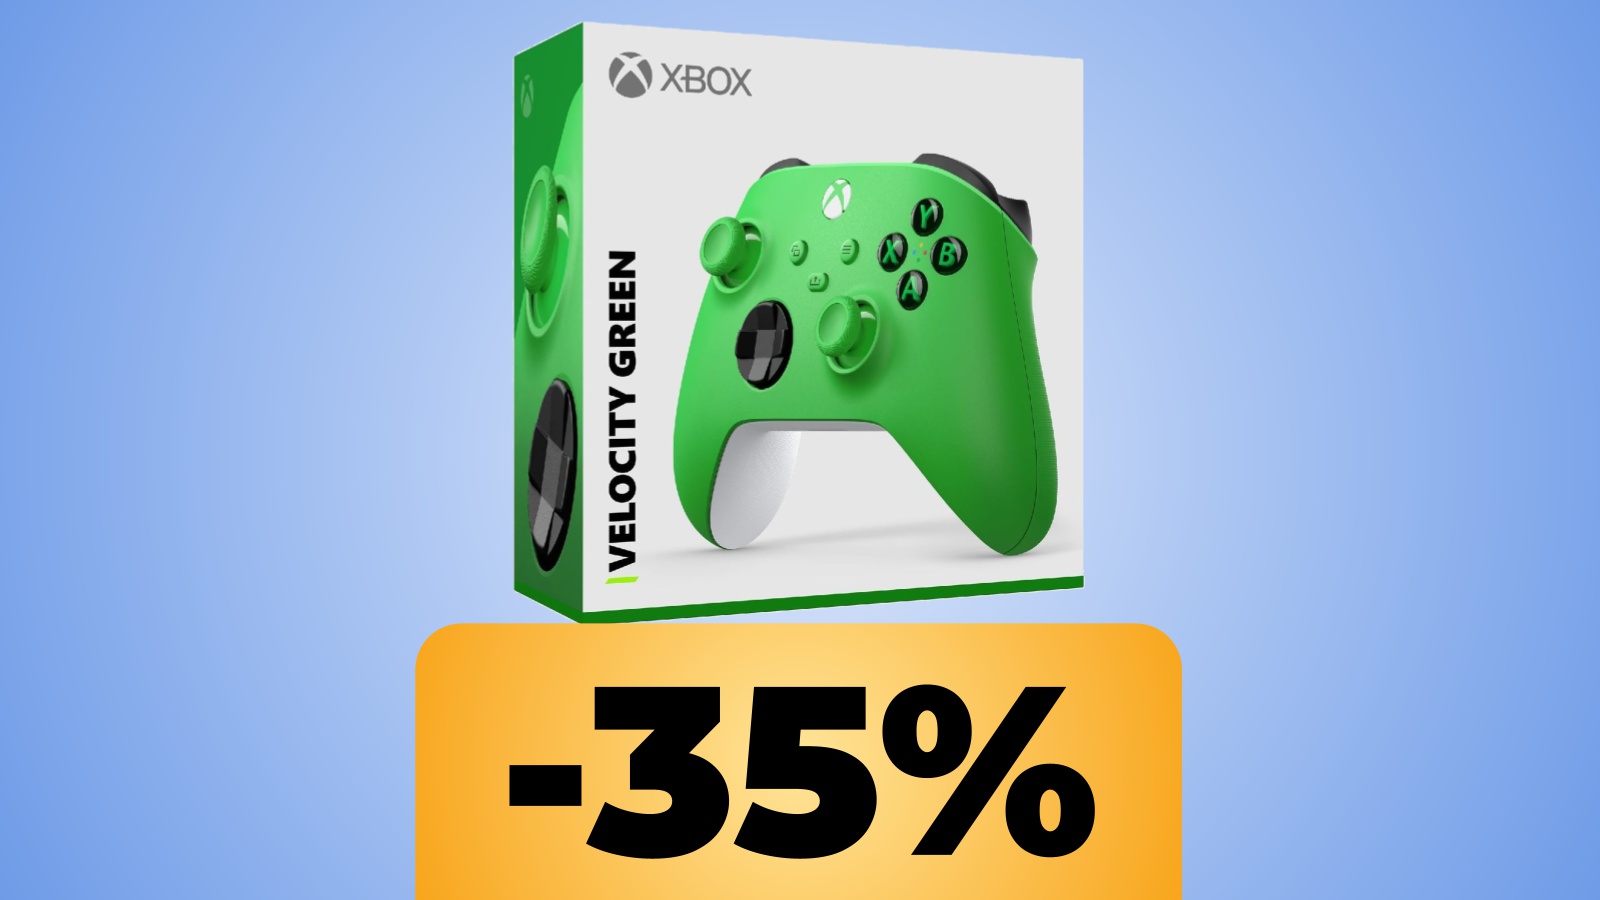 Il controller Xbox di colore Velocity Green (verde) con sotto la percentuale dello sconto di Amazon